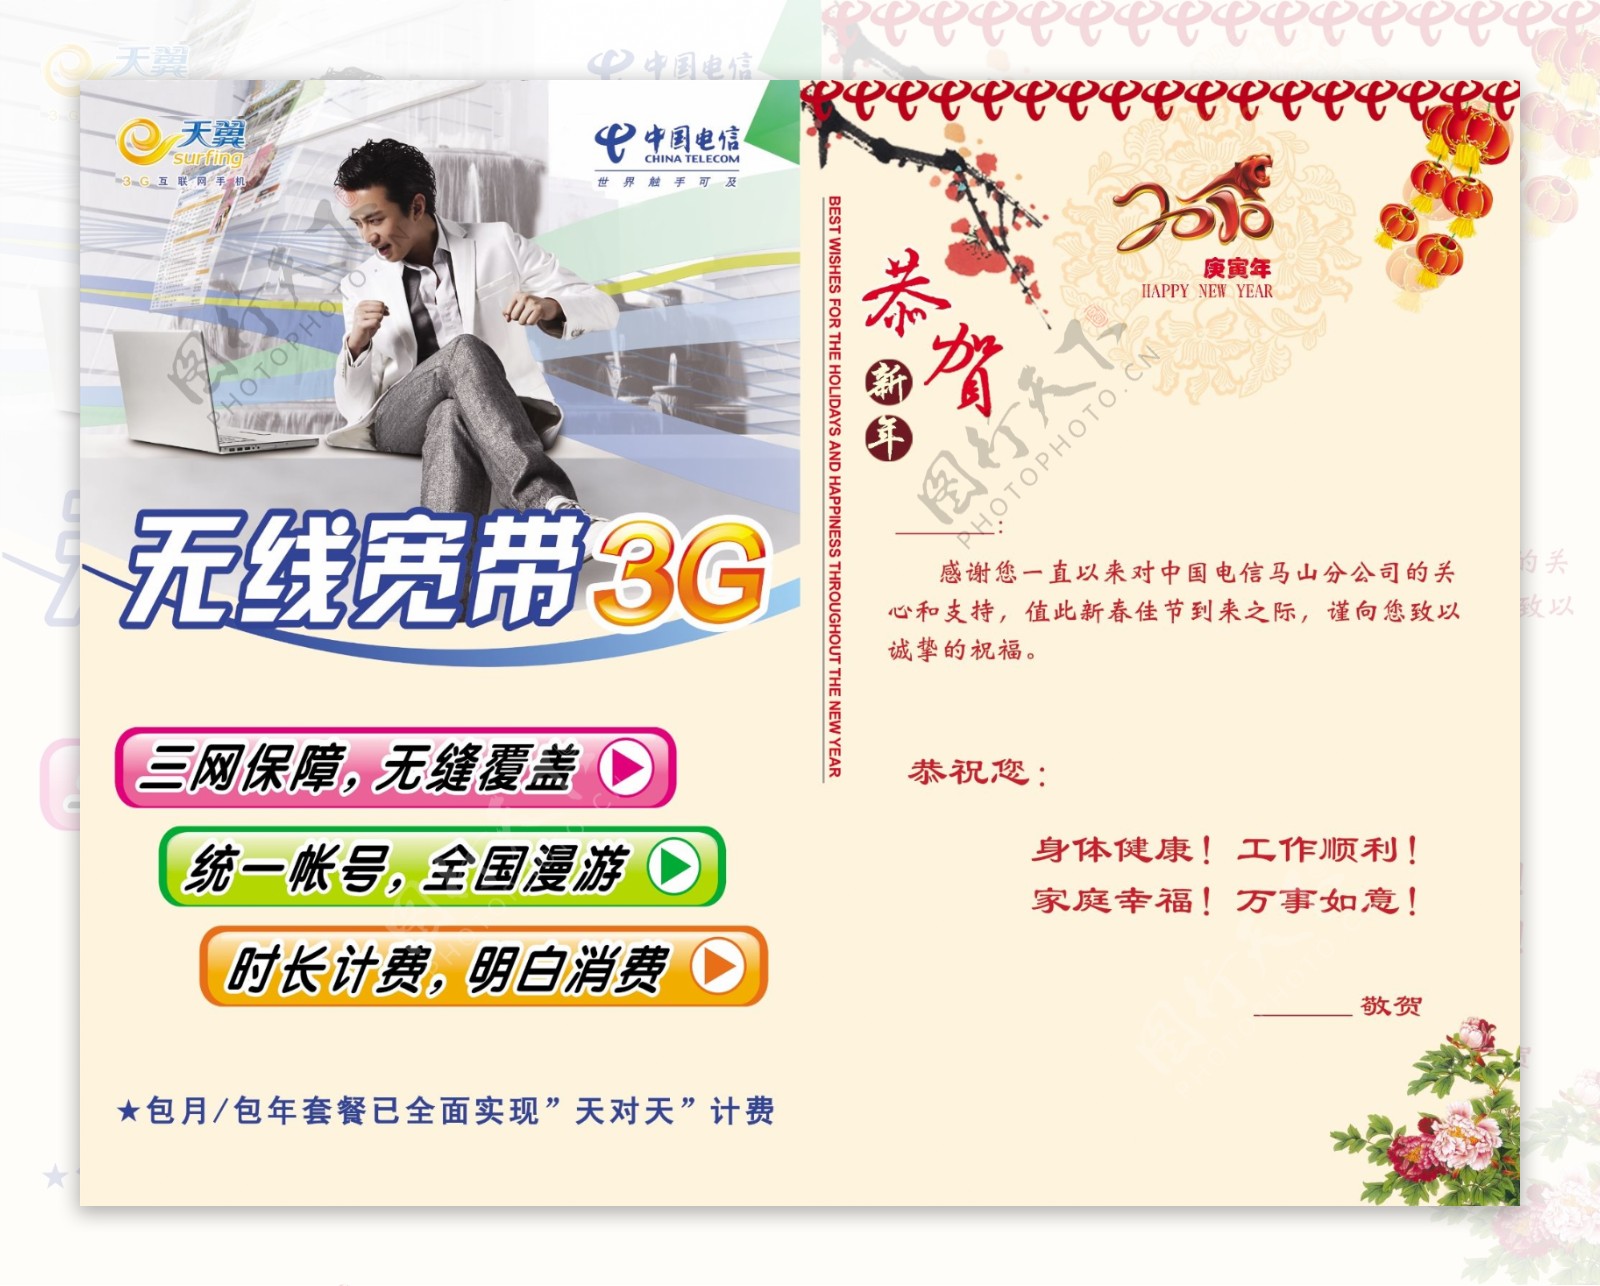 中国电信天翼无线宽带3g邓超代言广告图片